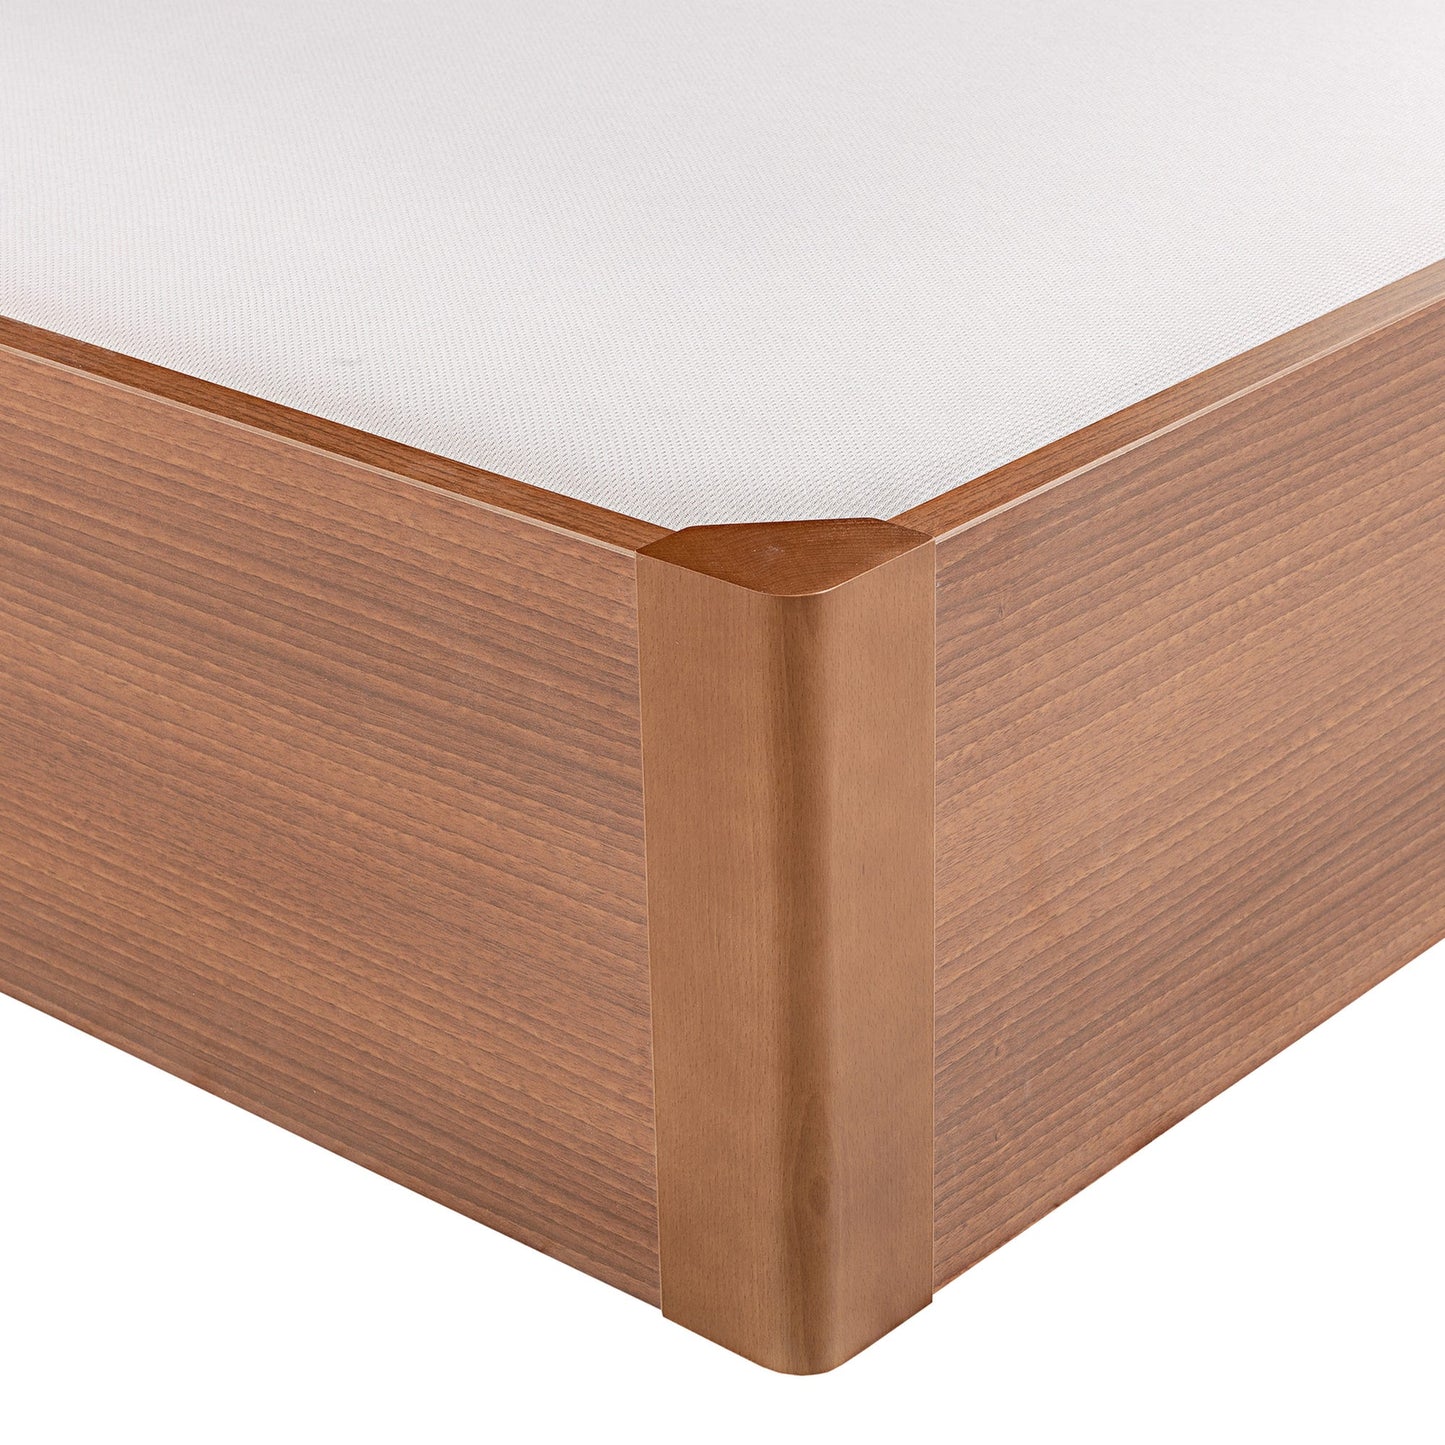 Canapé abatible de madera tapa única de color cerezo - DESIGN - 90x200